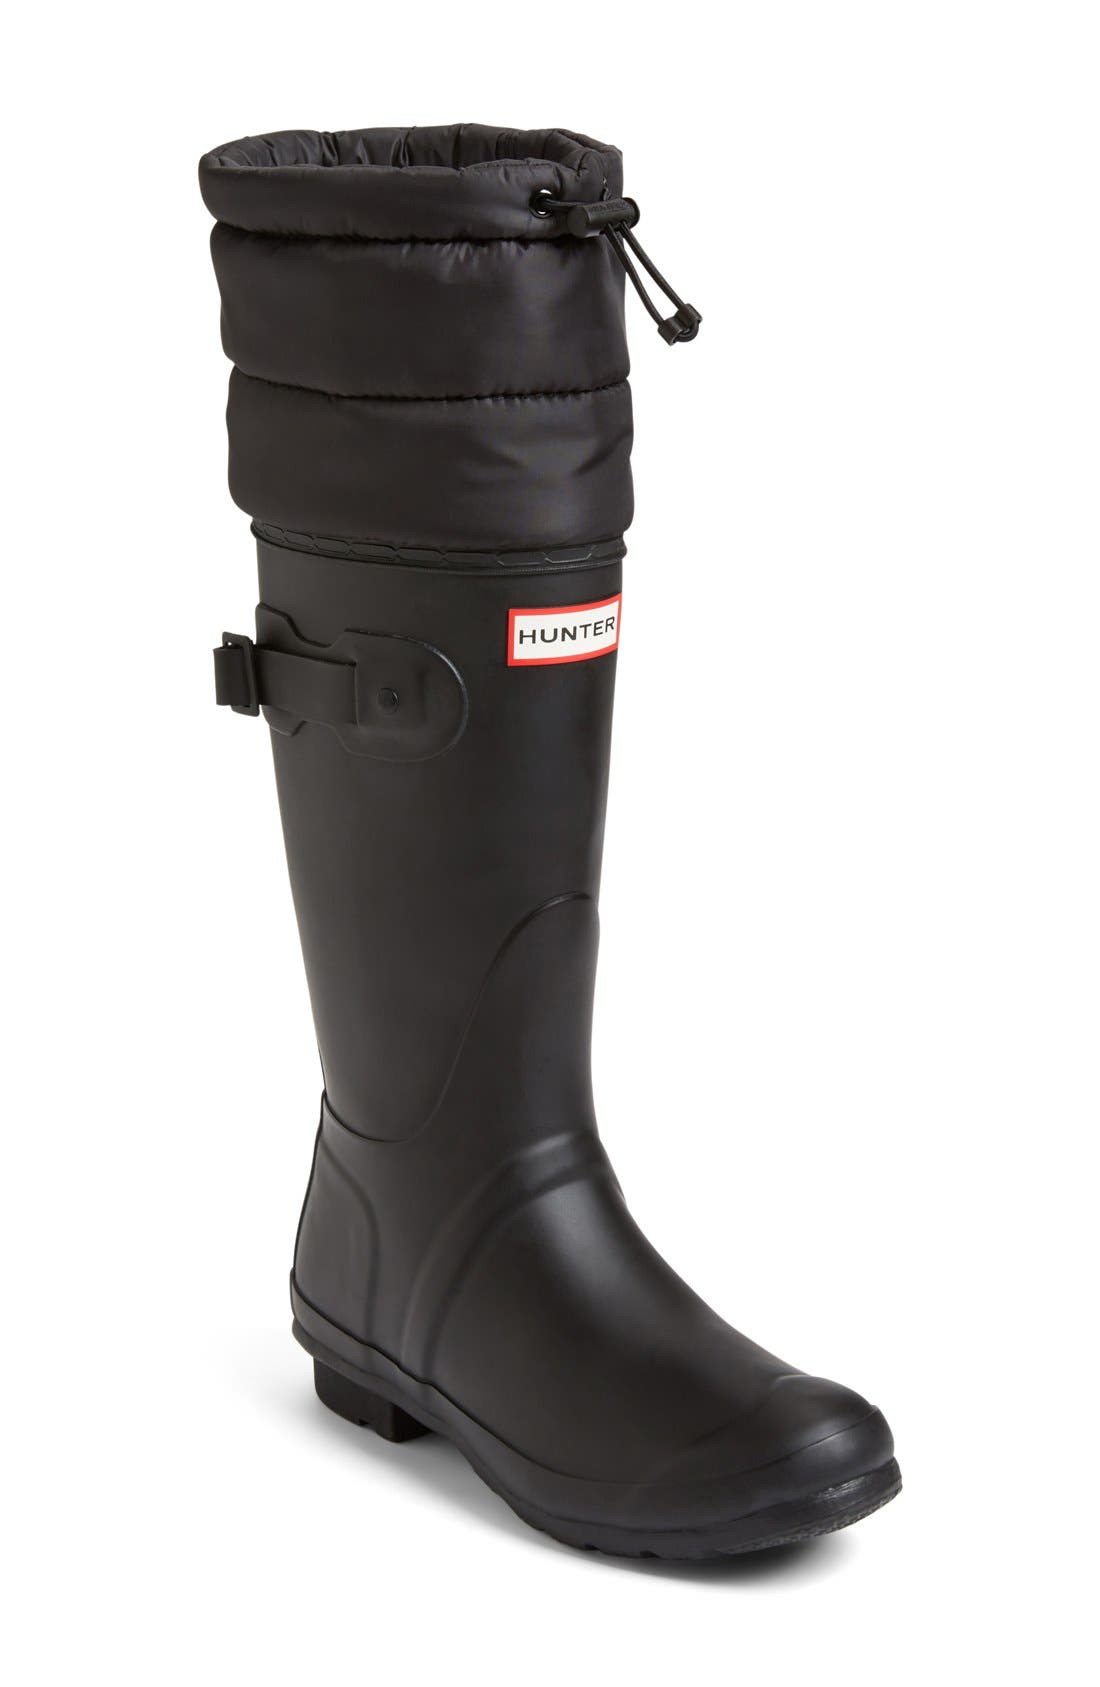 rain boot cuffs